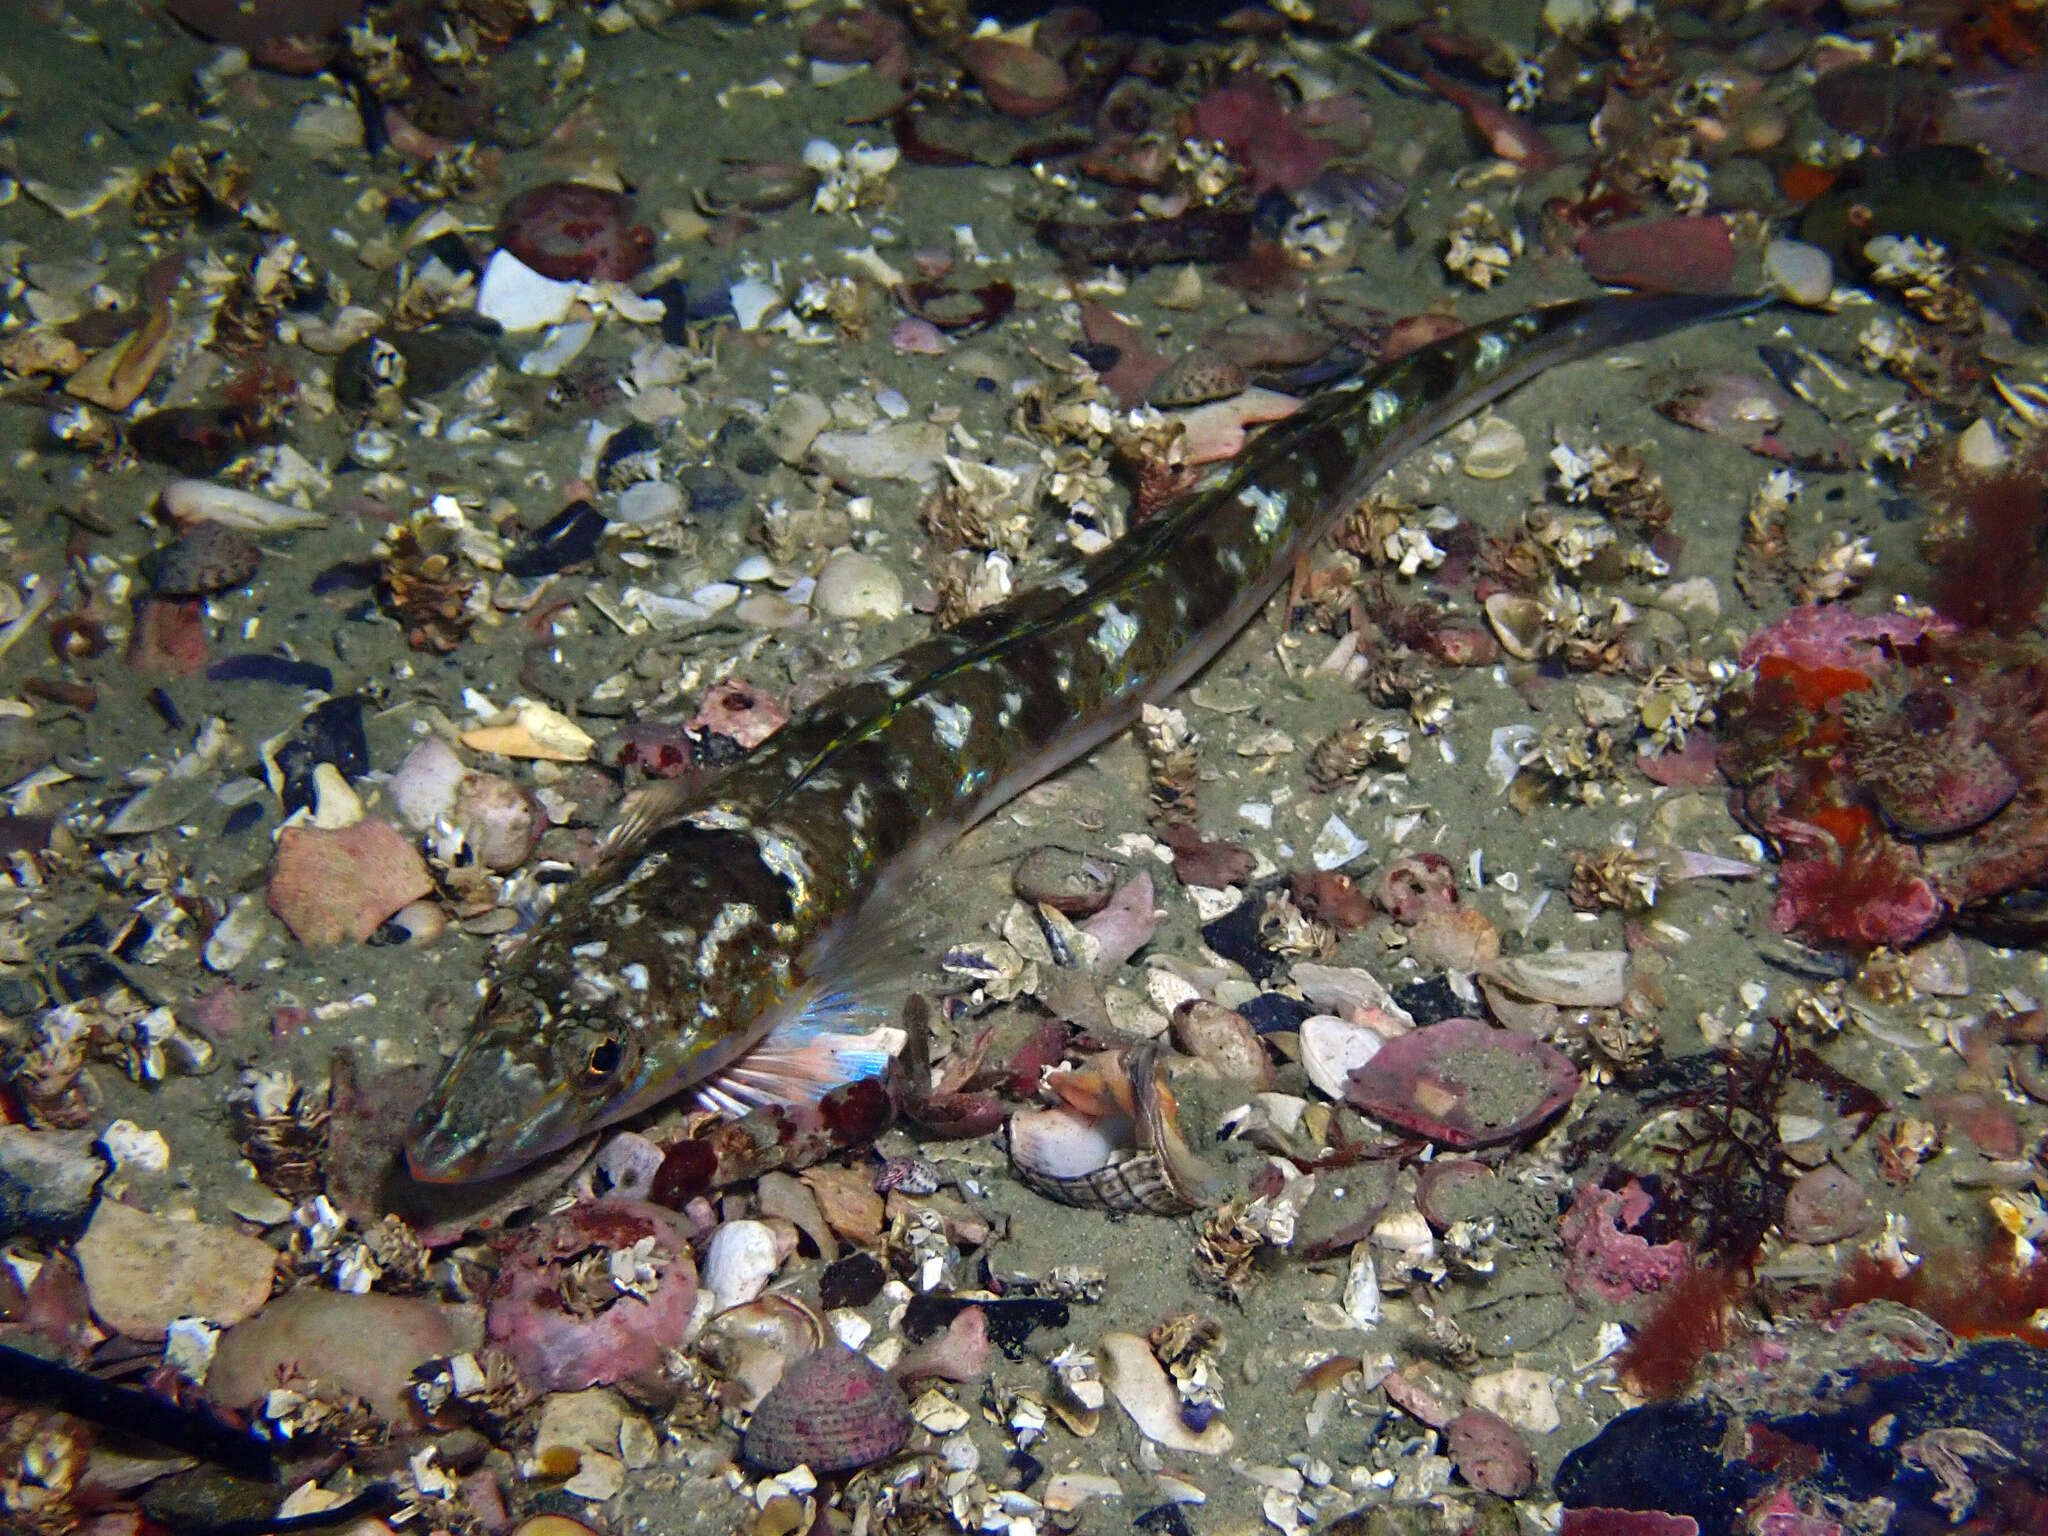 Image of Opalfish